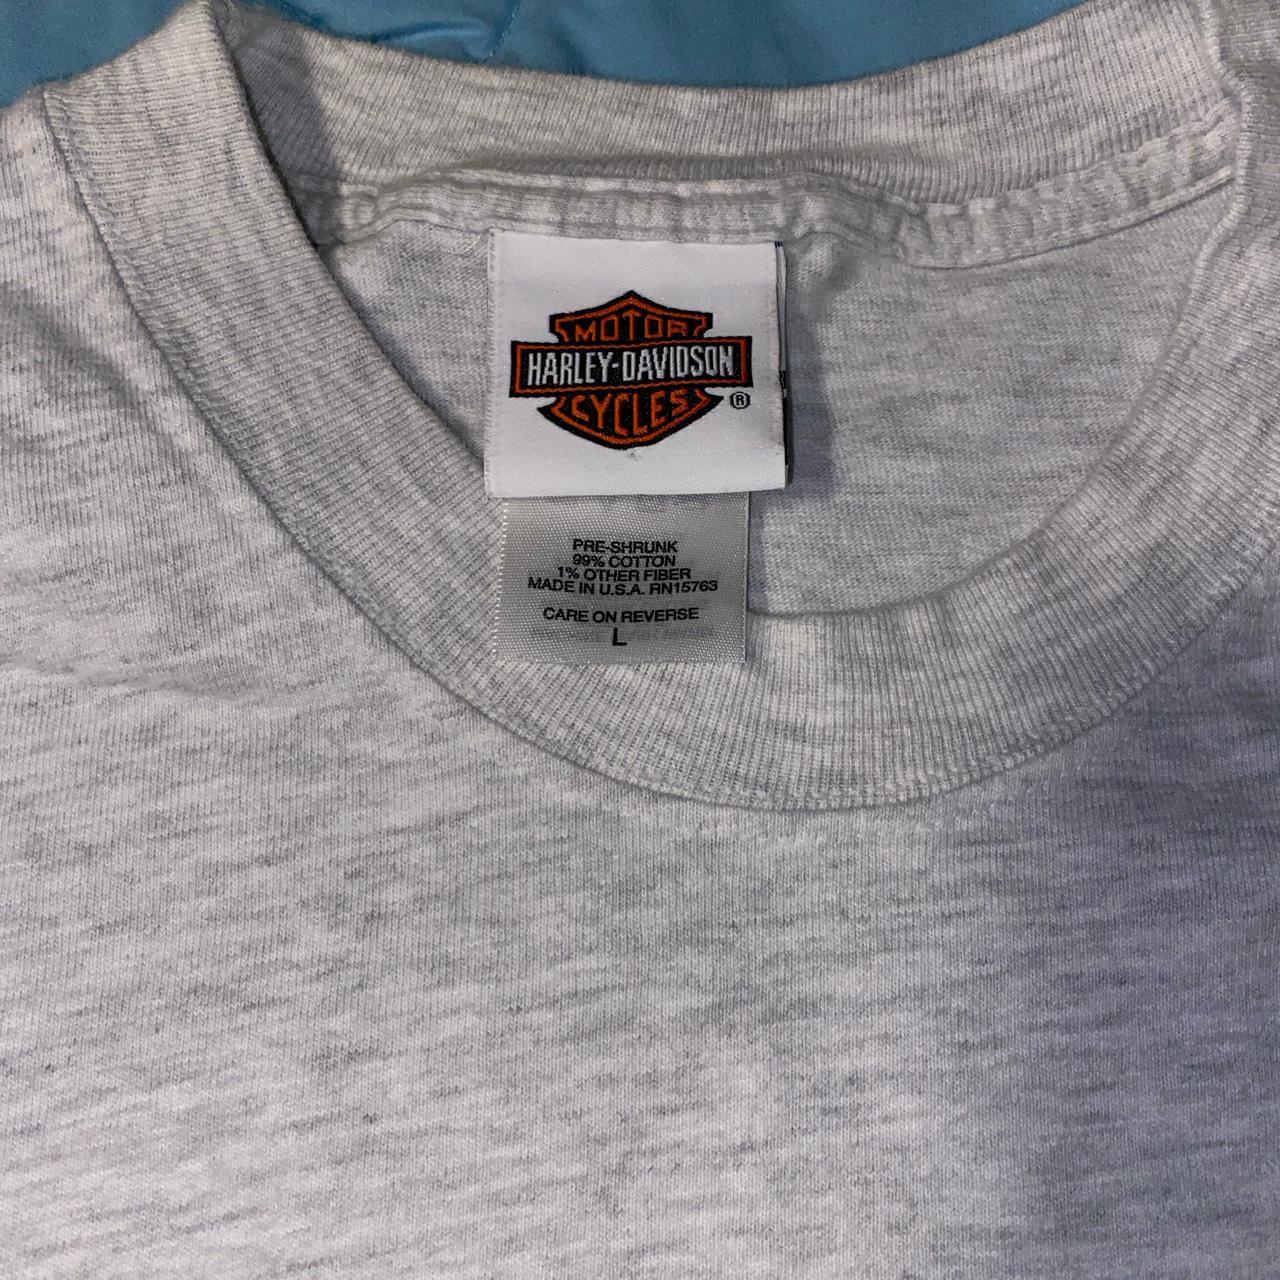 Product Image 3 - Harley Davidson Kenosha WI T-Shirt

Size